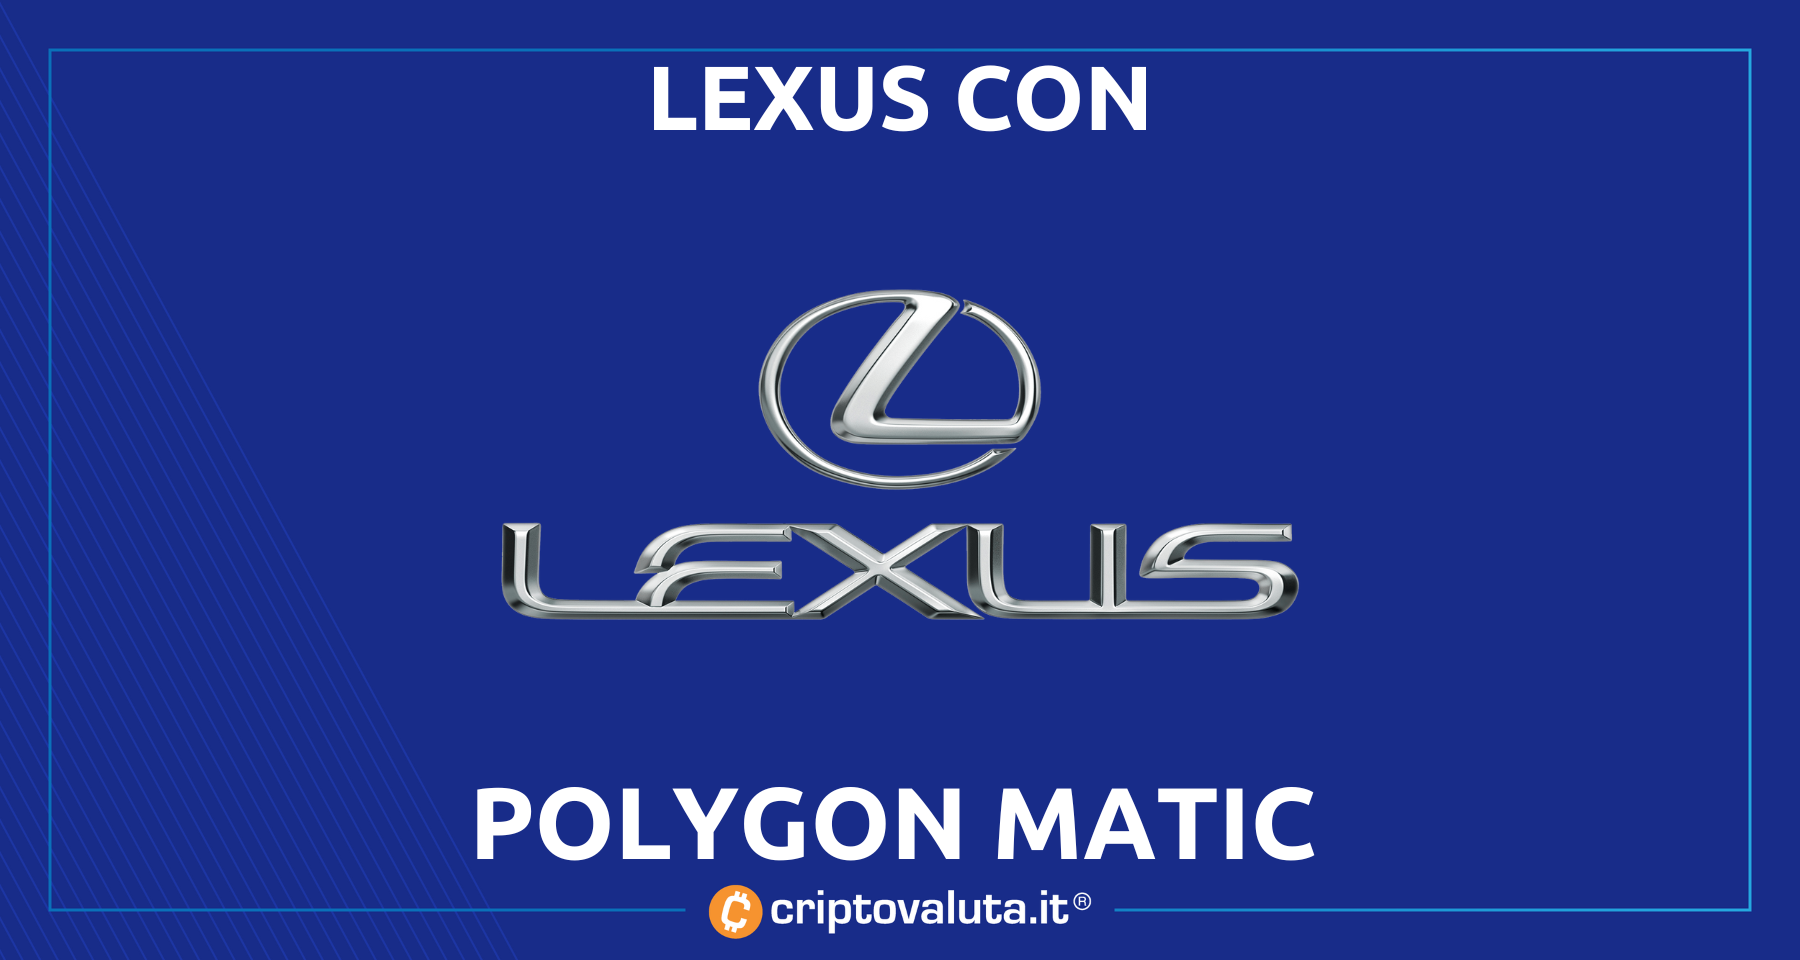 Polygon: arrivano i NFT di Lexus in chain | Altro accordo TOP per MATIC